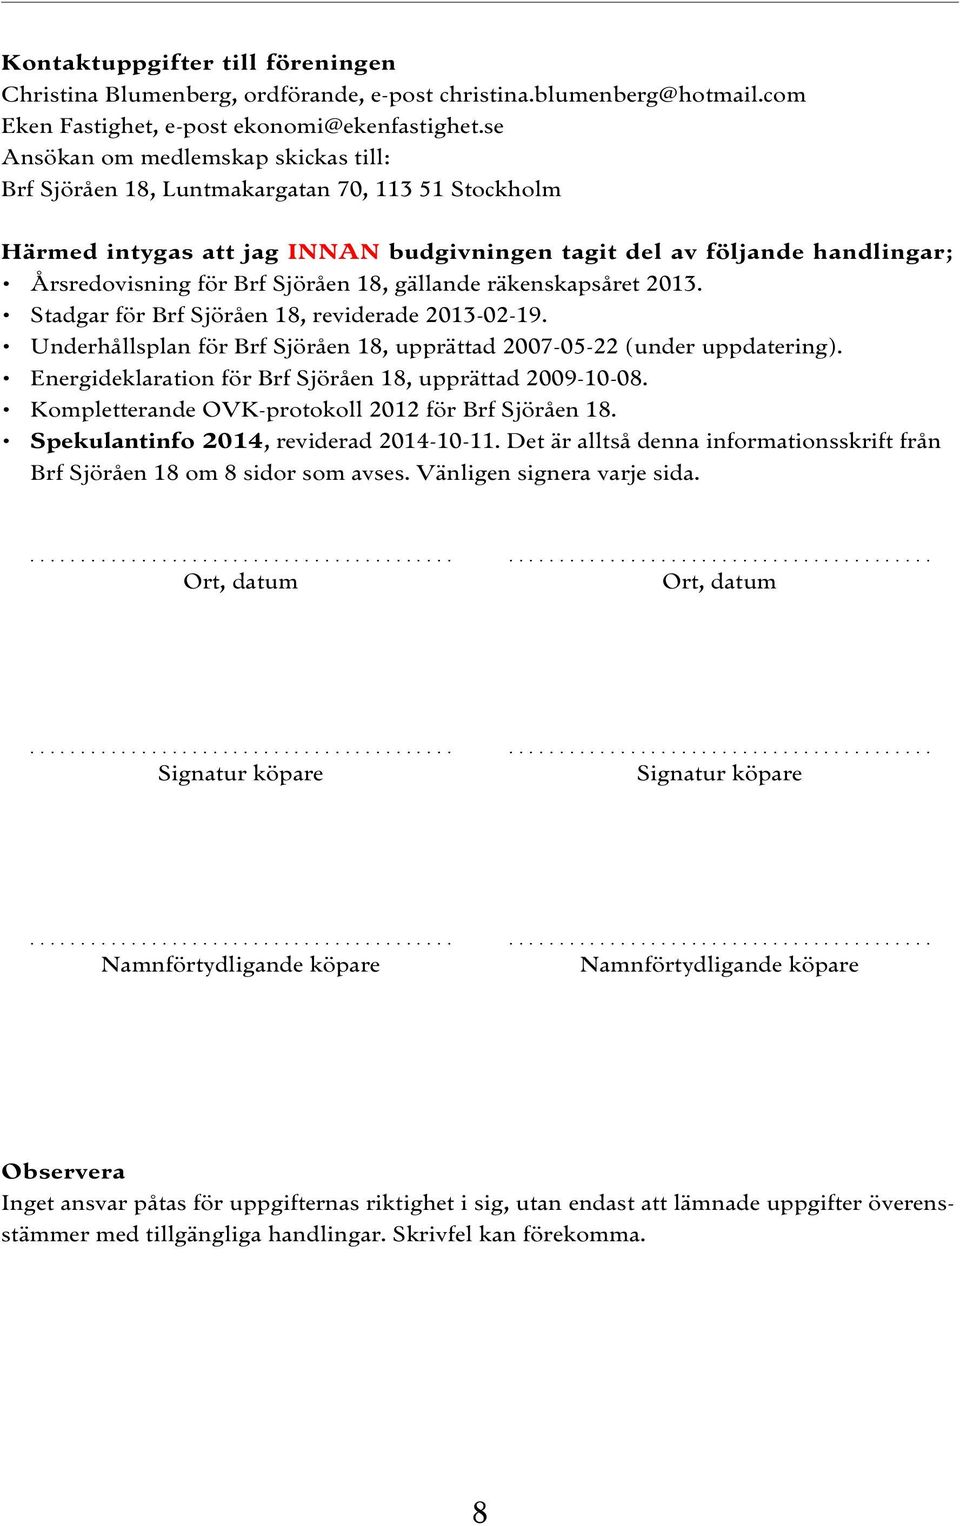 18, gällande räkenskapsåret 2013. Stadgar för Brf Sjöråen 18, reviderade 2013-02-19. Underhållsplan för Brf Sjöråen 18, upprättad 2007-05-22 (under uppdatering).